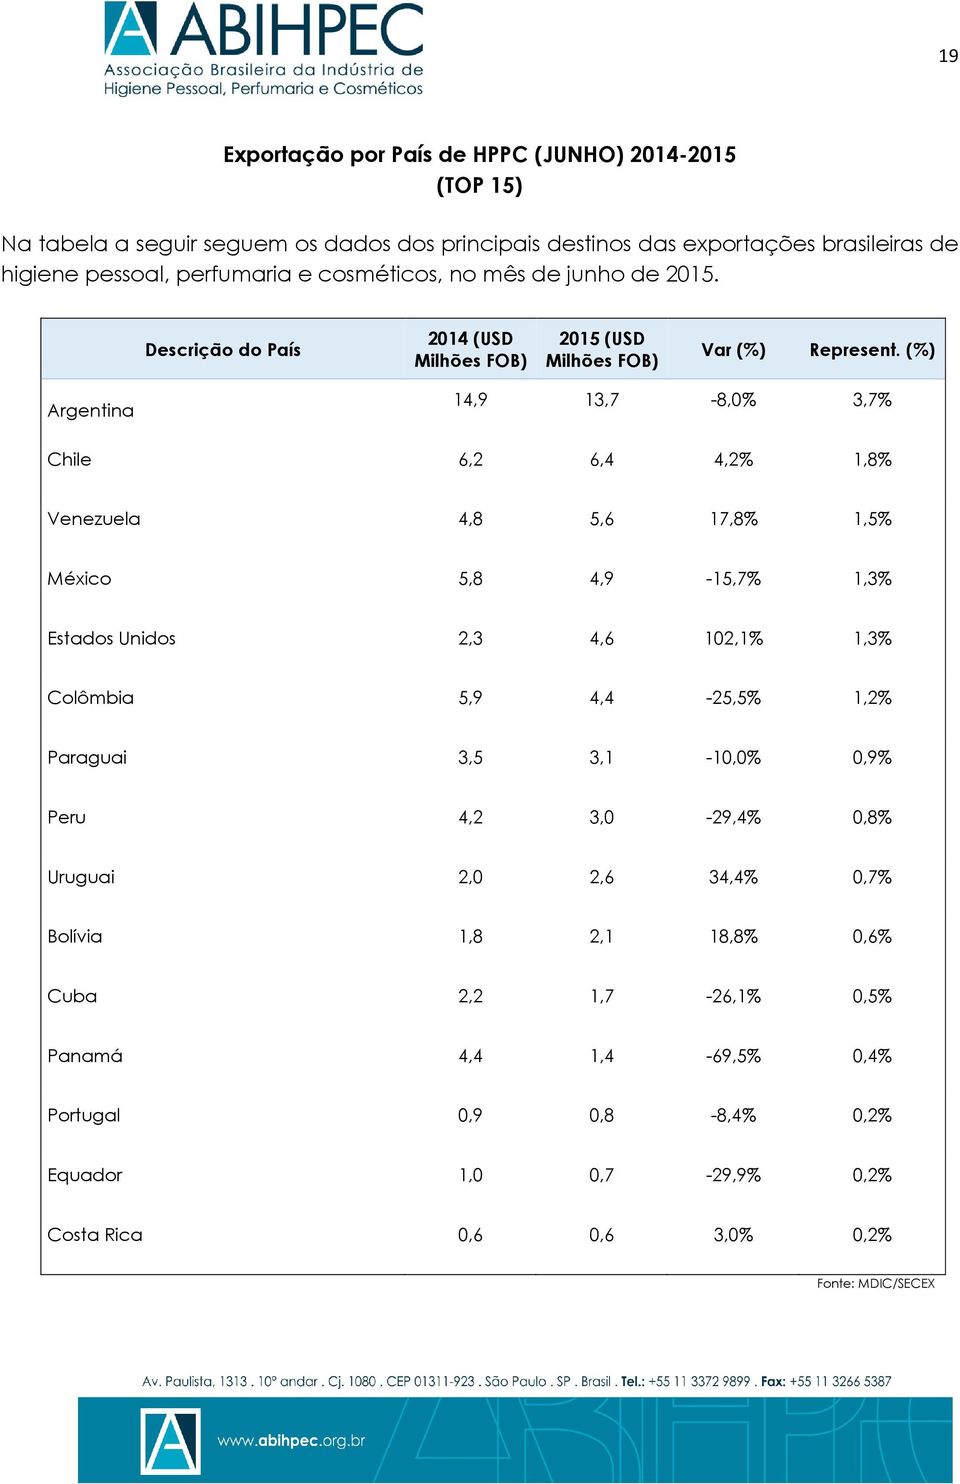 (%) Argentina 14,9 13,7-8,0% 3,7% Chile 6,2 6,4 4,2% 1,8% Venezuela 4,8 5,6 17,8% 1,5% México 5,8 4,9-15,7% 1,3% Estados Unidos 2,3 4,6 102,1% 1,3% Colômbia 5,9 4,4-25,5% 1,2%